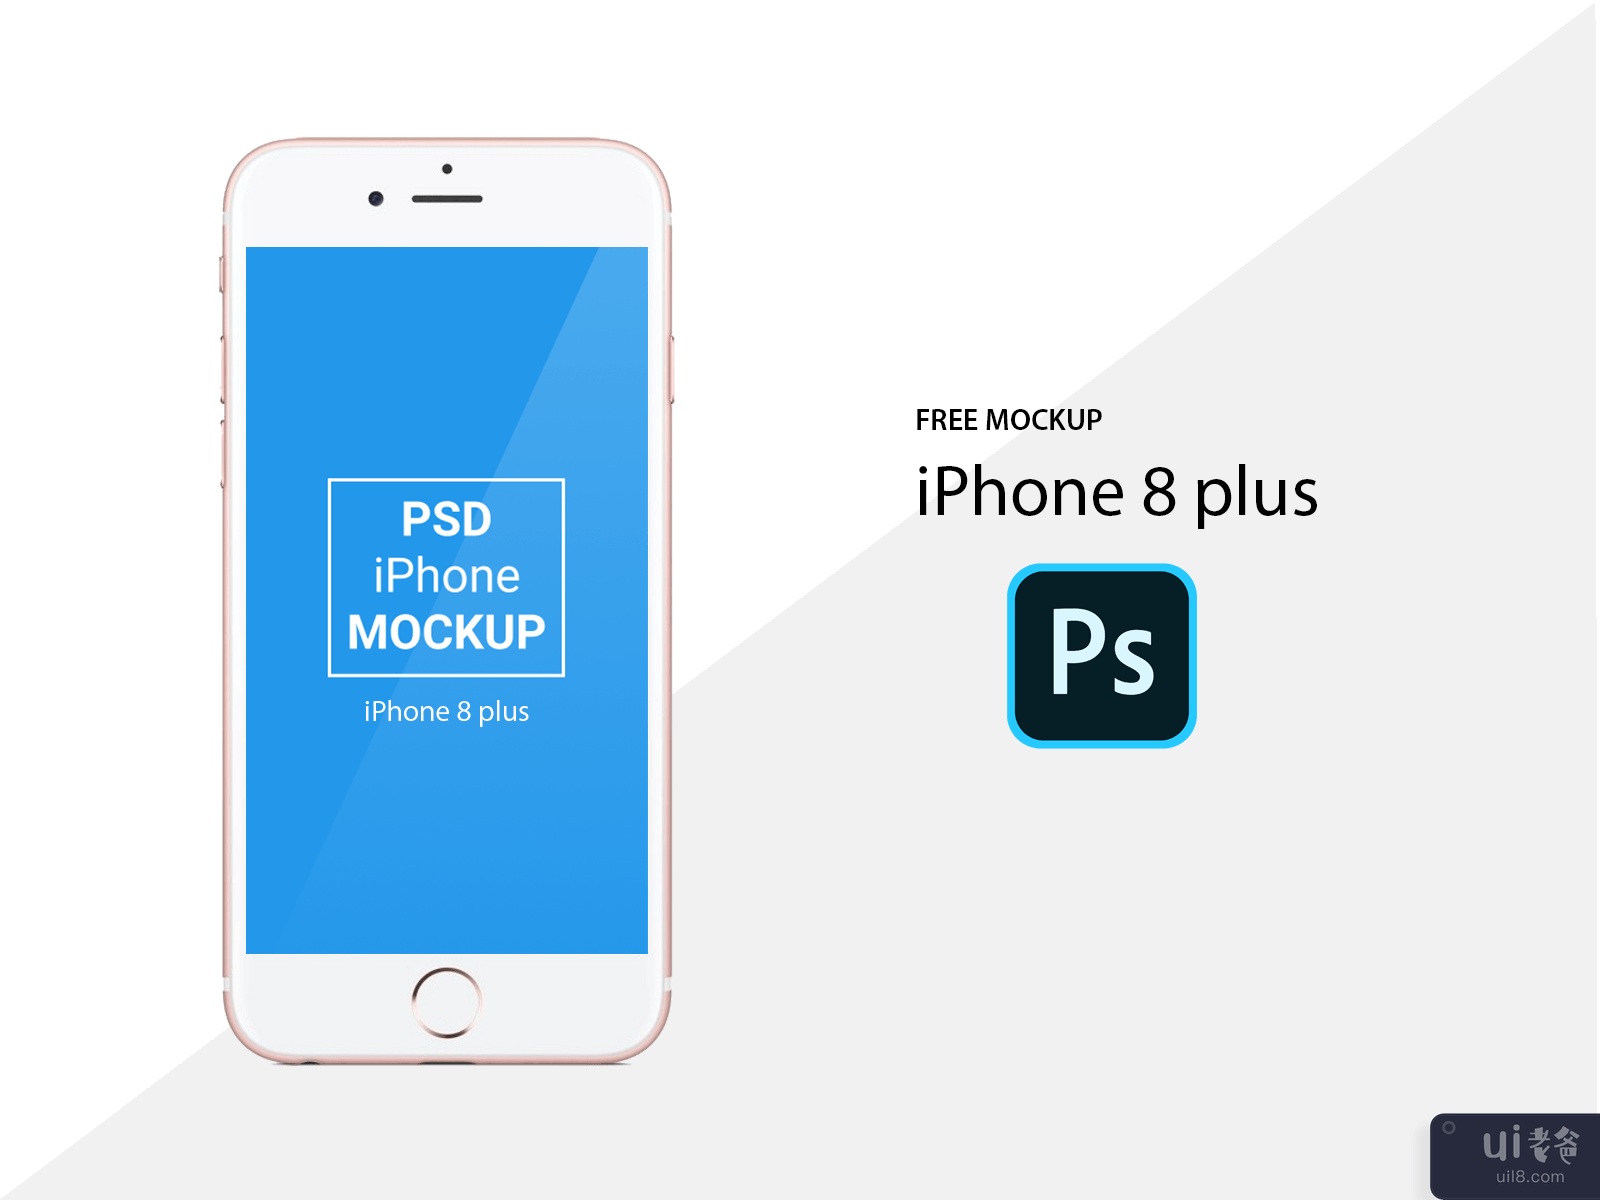 Apple iPhone 8 Plus PSD 模型 - 免费 iPhone 模型(Apple iPhone 8 Plus PSD Mockup - Free iPhone Mockup)插图2